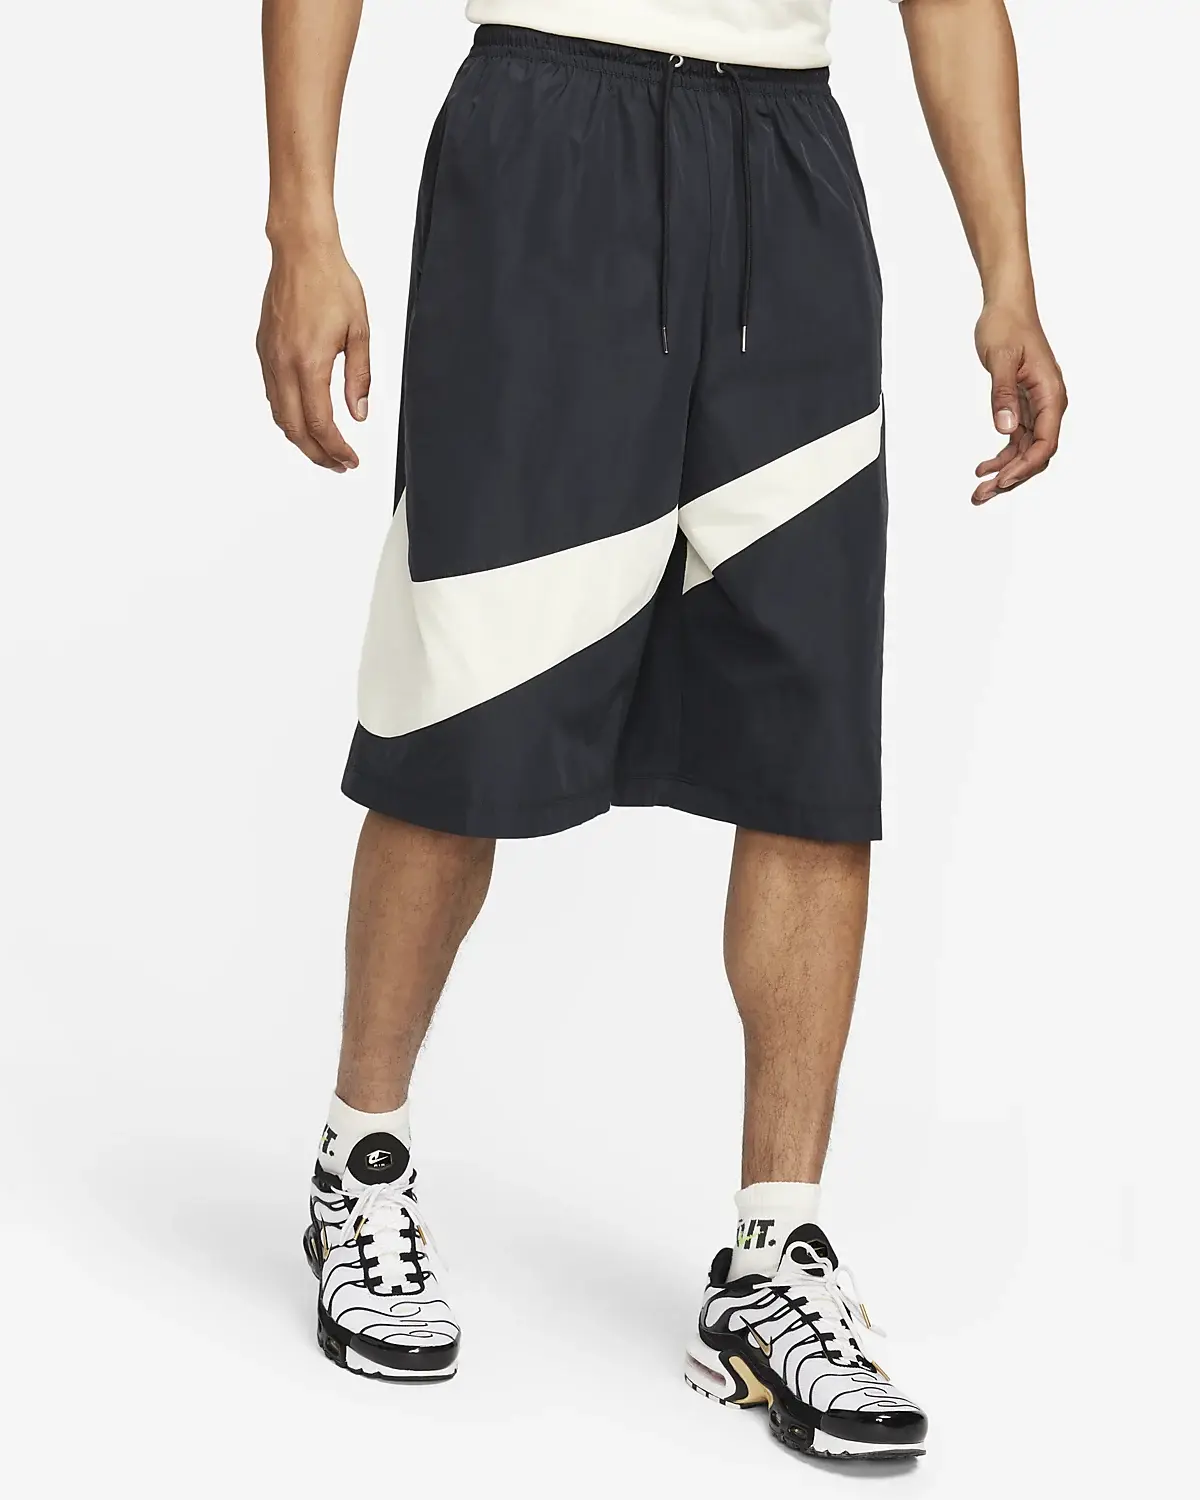 Nike Sportswear Swoosh. 1